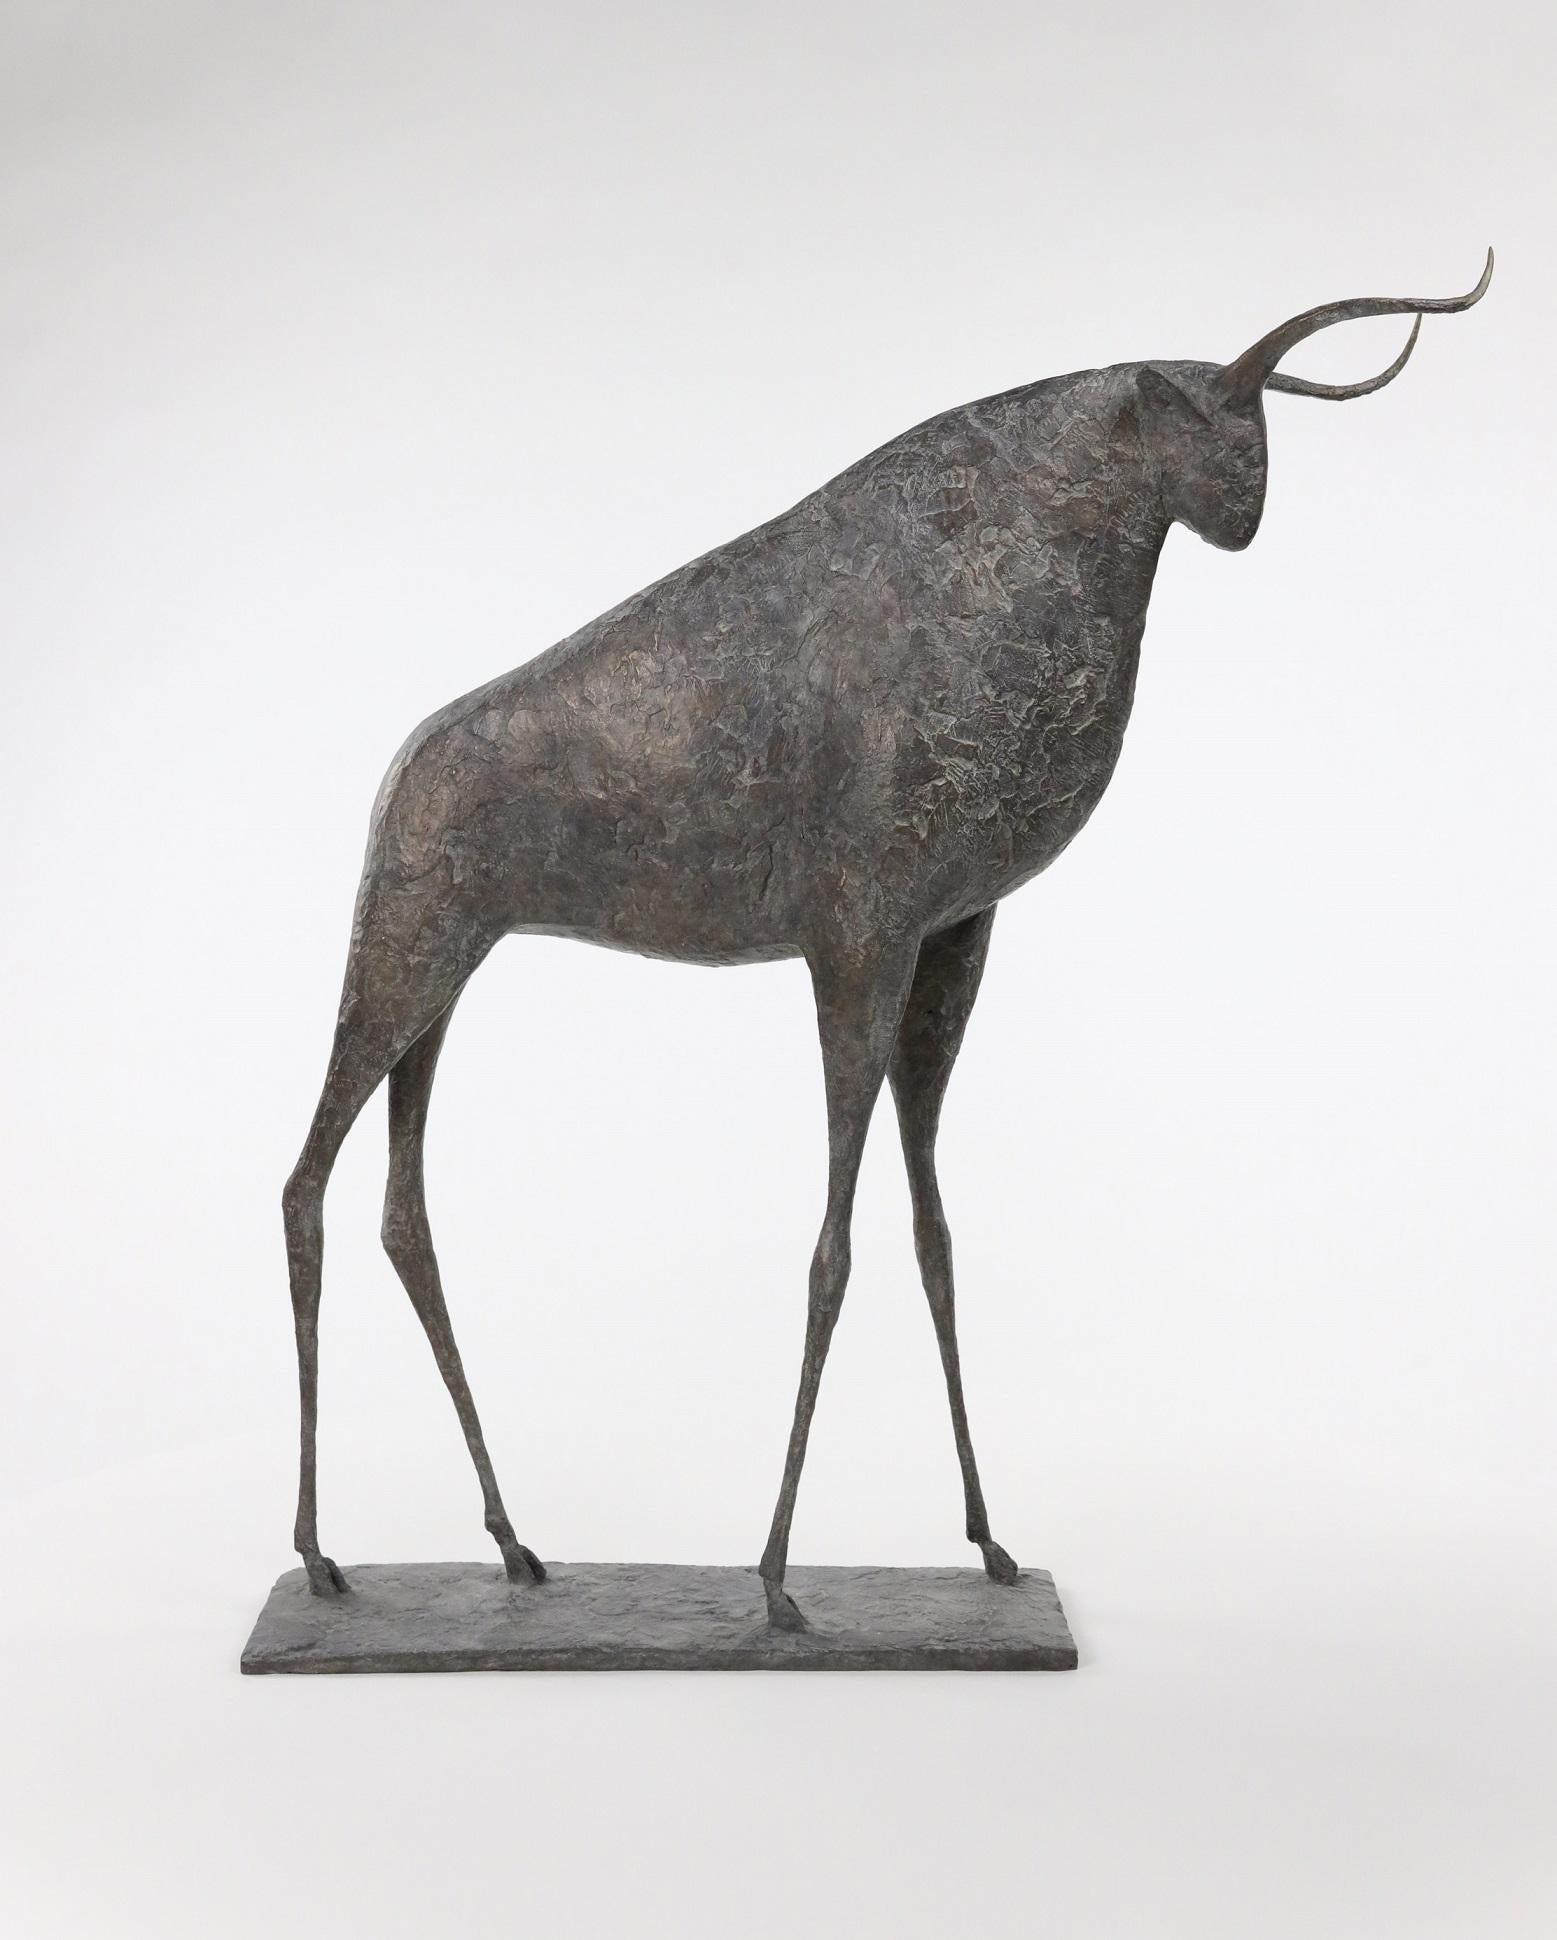 Bull IX est une sculpture en bronze de l'artiste contemporain français Pierre Yermia, dont les dimensions sont 66 × 60 × 15 cm (26 × 23,6 × 5,9 in). 
La sculpture est signée et numérotée, elle fait partie d'une édition limitée à 8 exemplaires + 4